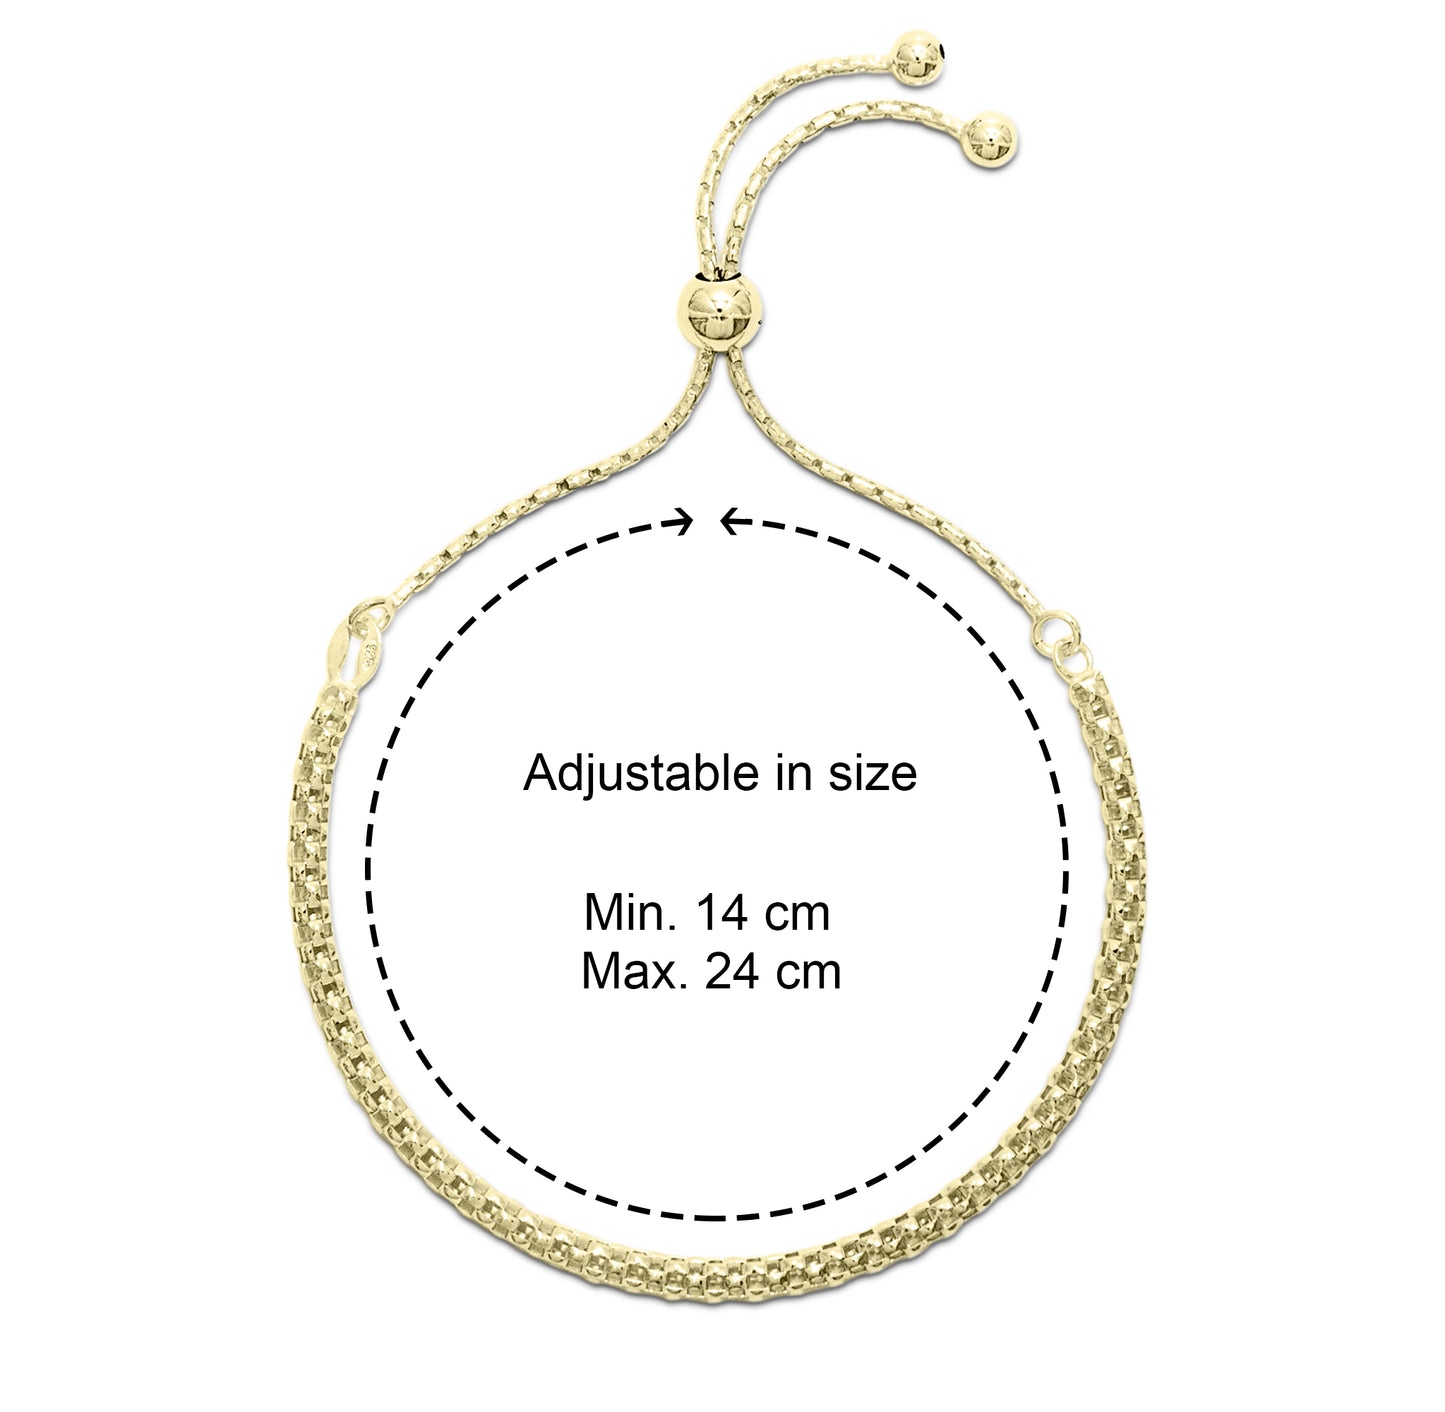 GRACE - Fancylink Adjustable Bracelet in Gold